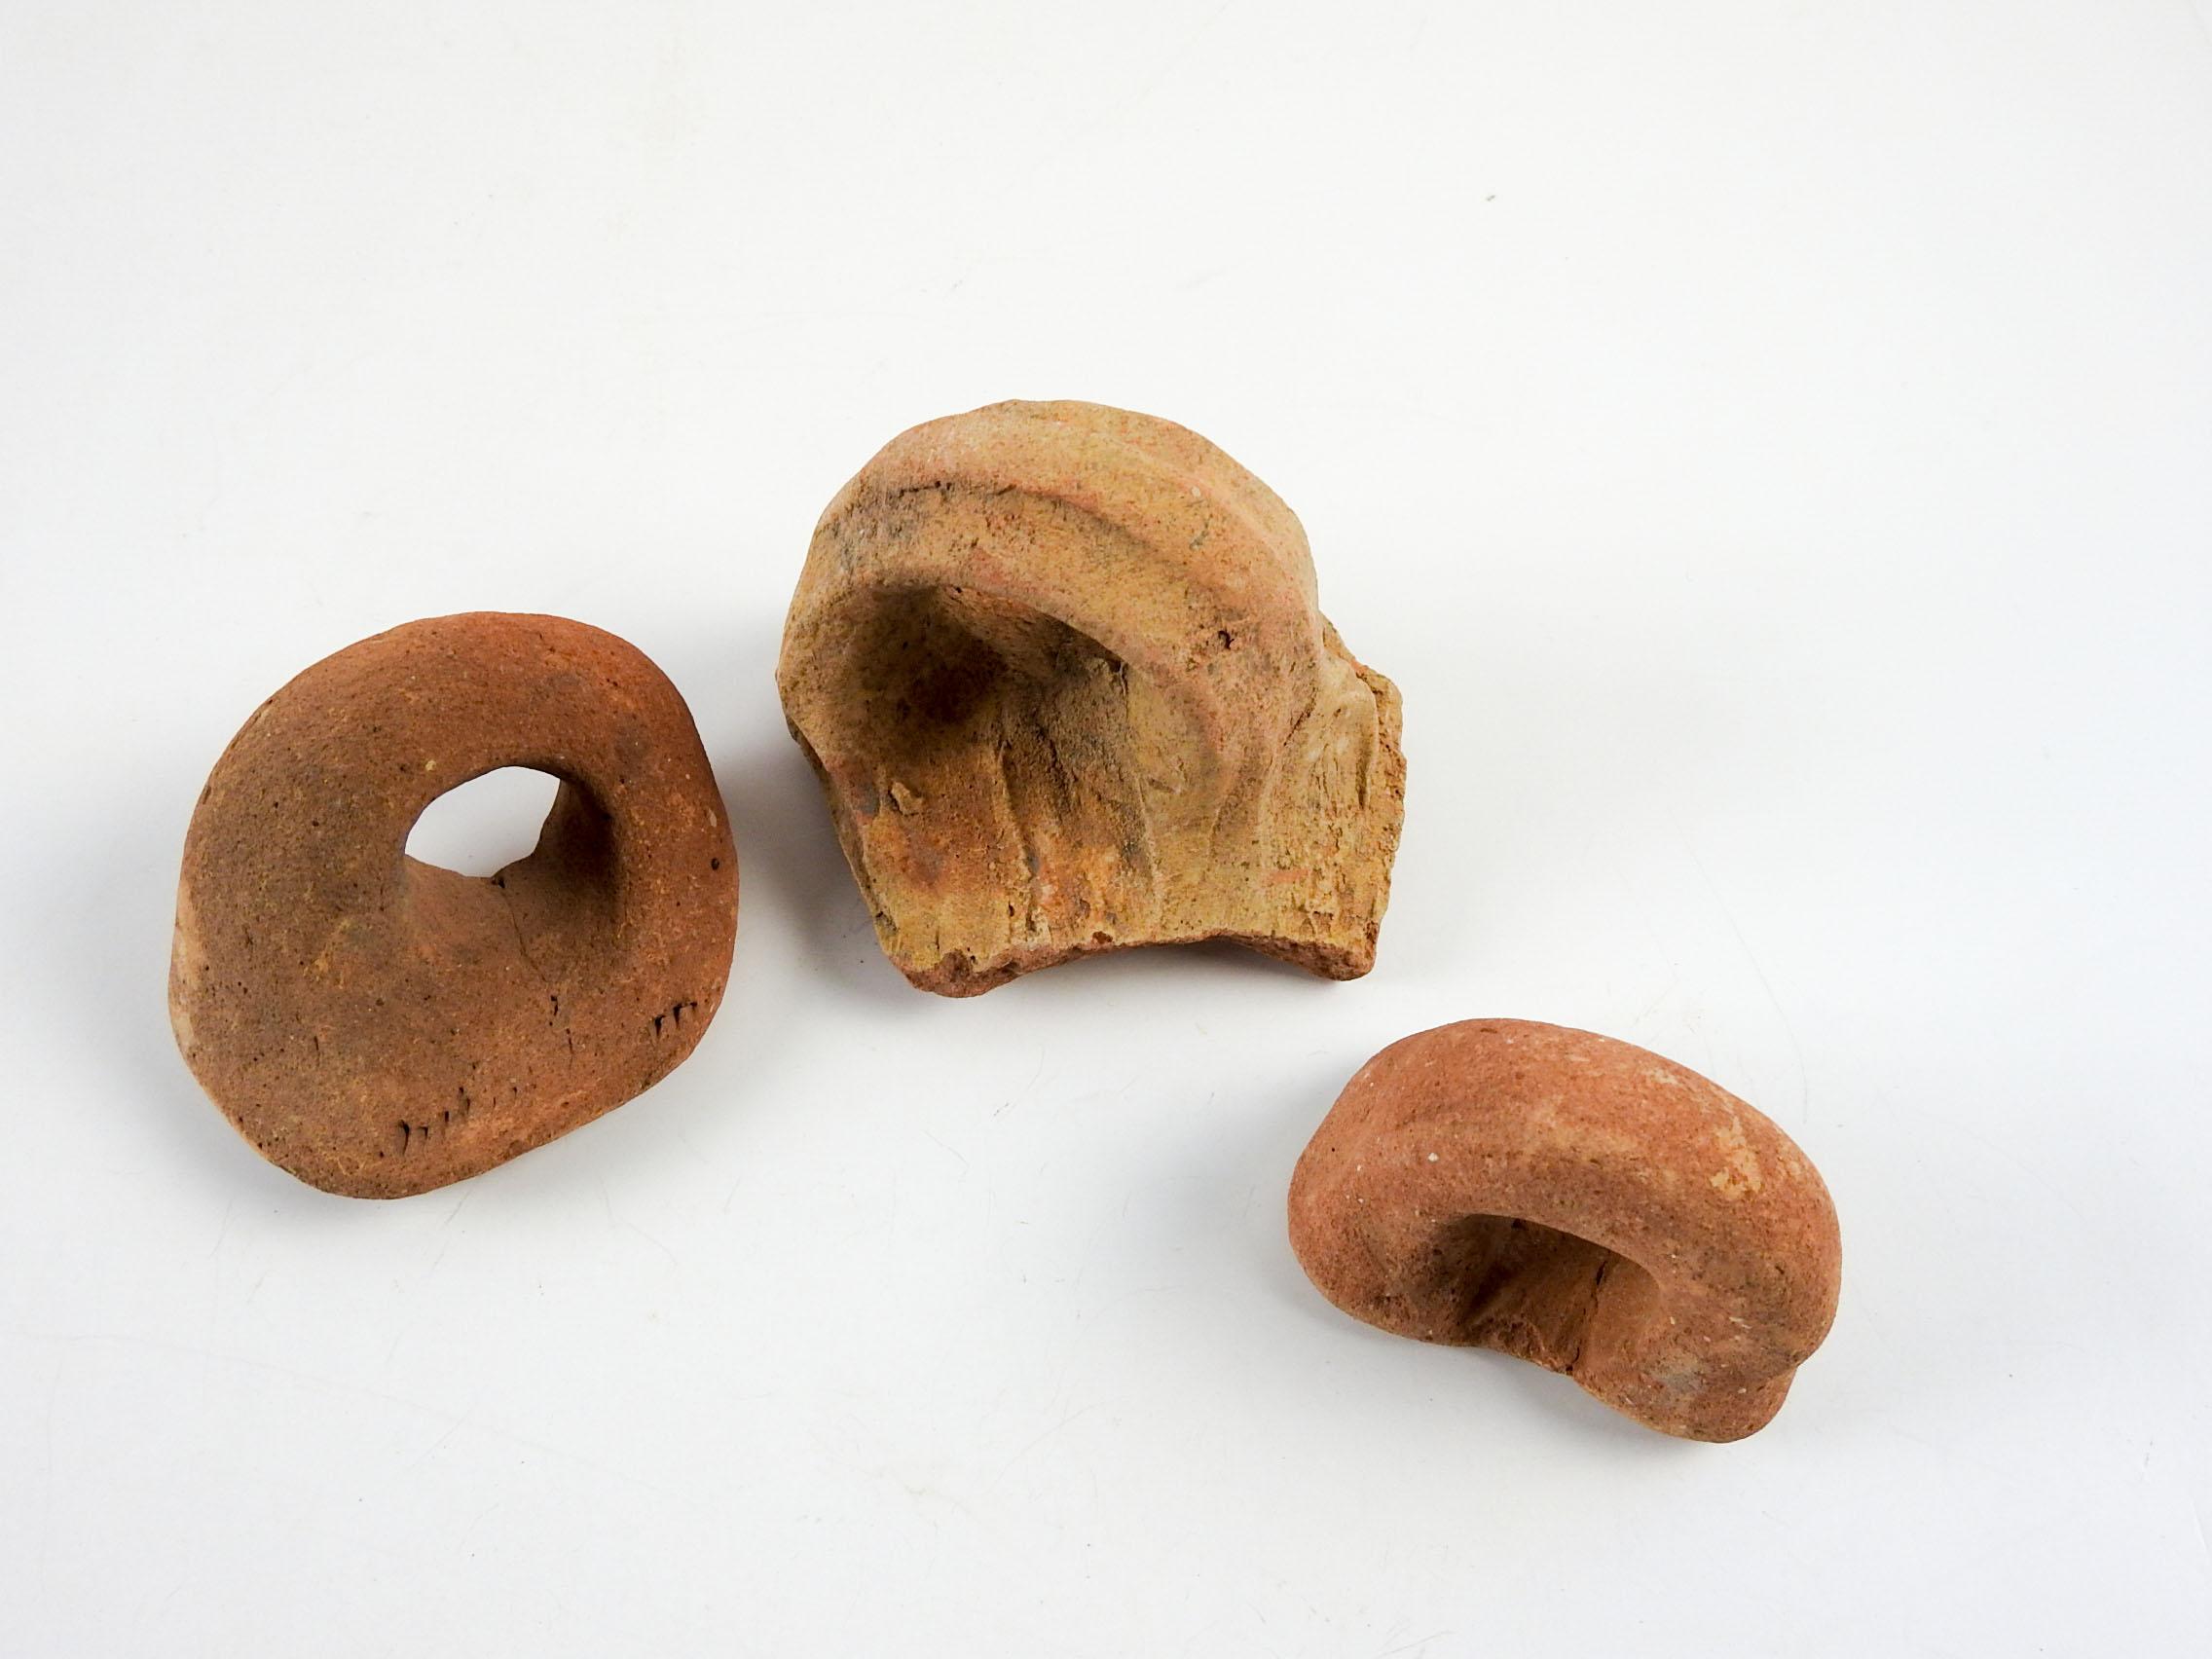 Groupe de 3 fragments d'anses de poterie en terre cuite de la Méditerranée antique . J'ai plusieurs ensembles de ces, les couleurs varient de brunâtre à rougeâtre, la taille et l'usure globale variera. Le plus grand fragment mesure environ 3,5 